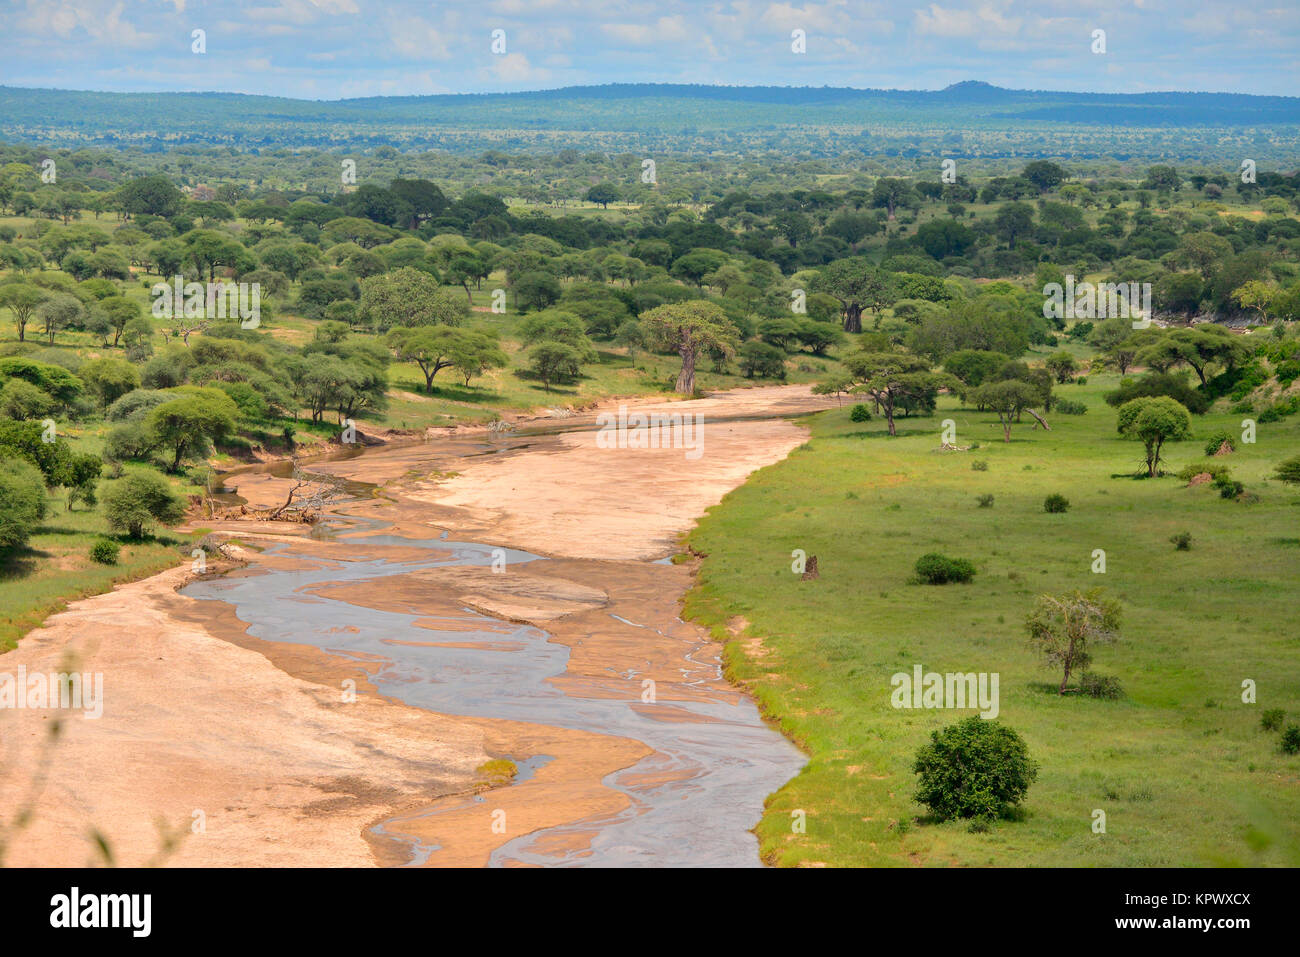 Der Tarangire National Park in Tansania ist berühmt für seine schönen Landschaften entlang der Tarangire River, wo viele Tiere, die in der trockenen Jahreszeit congretate. Stockfoto